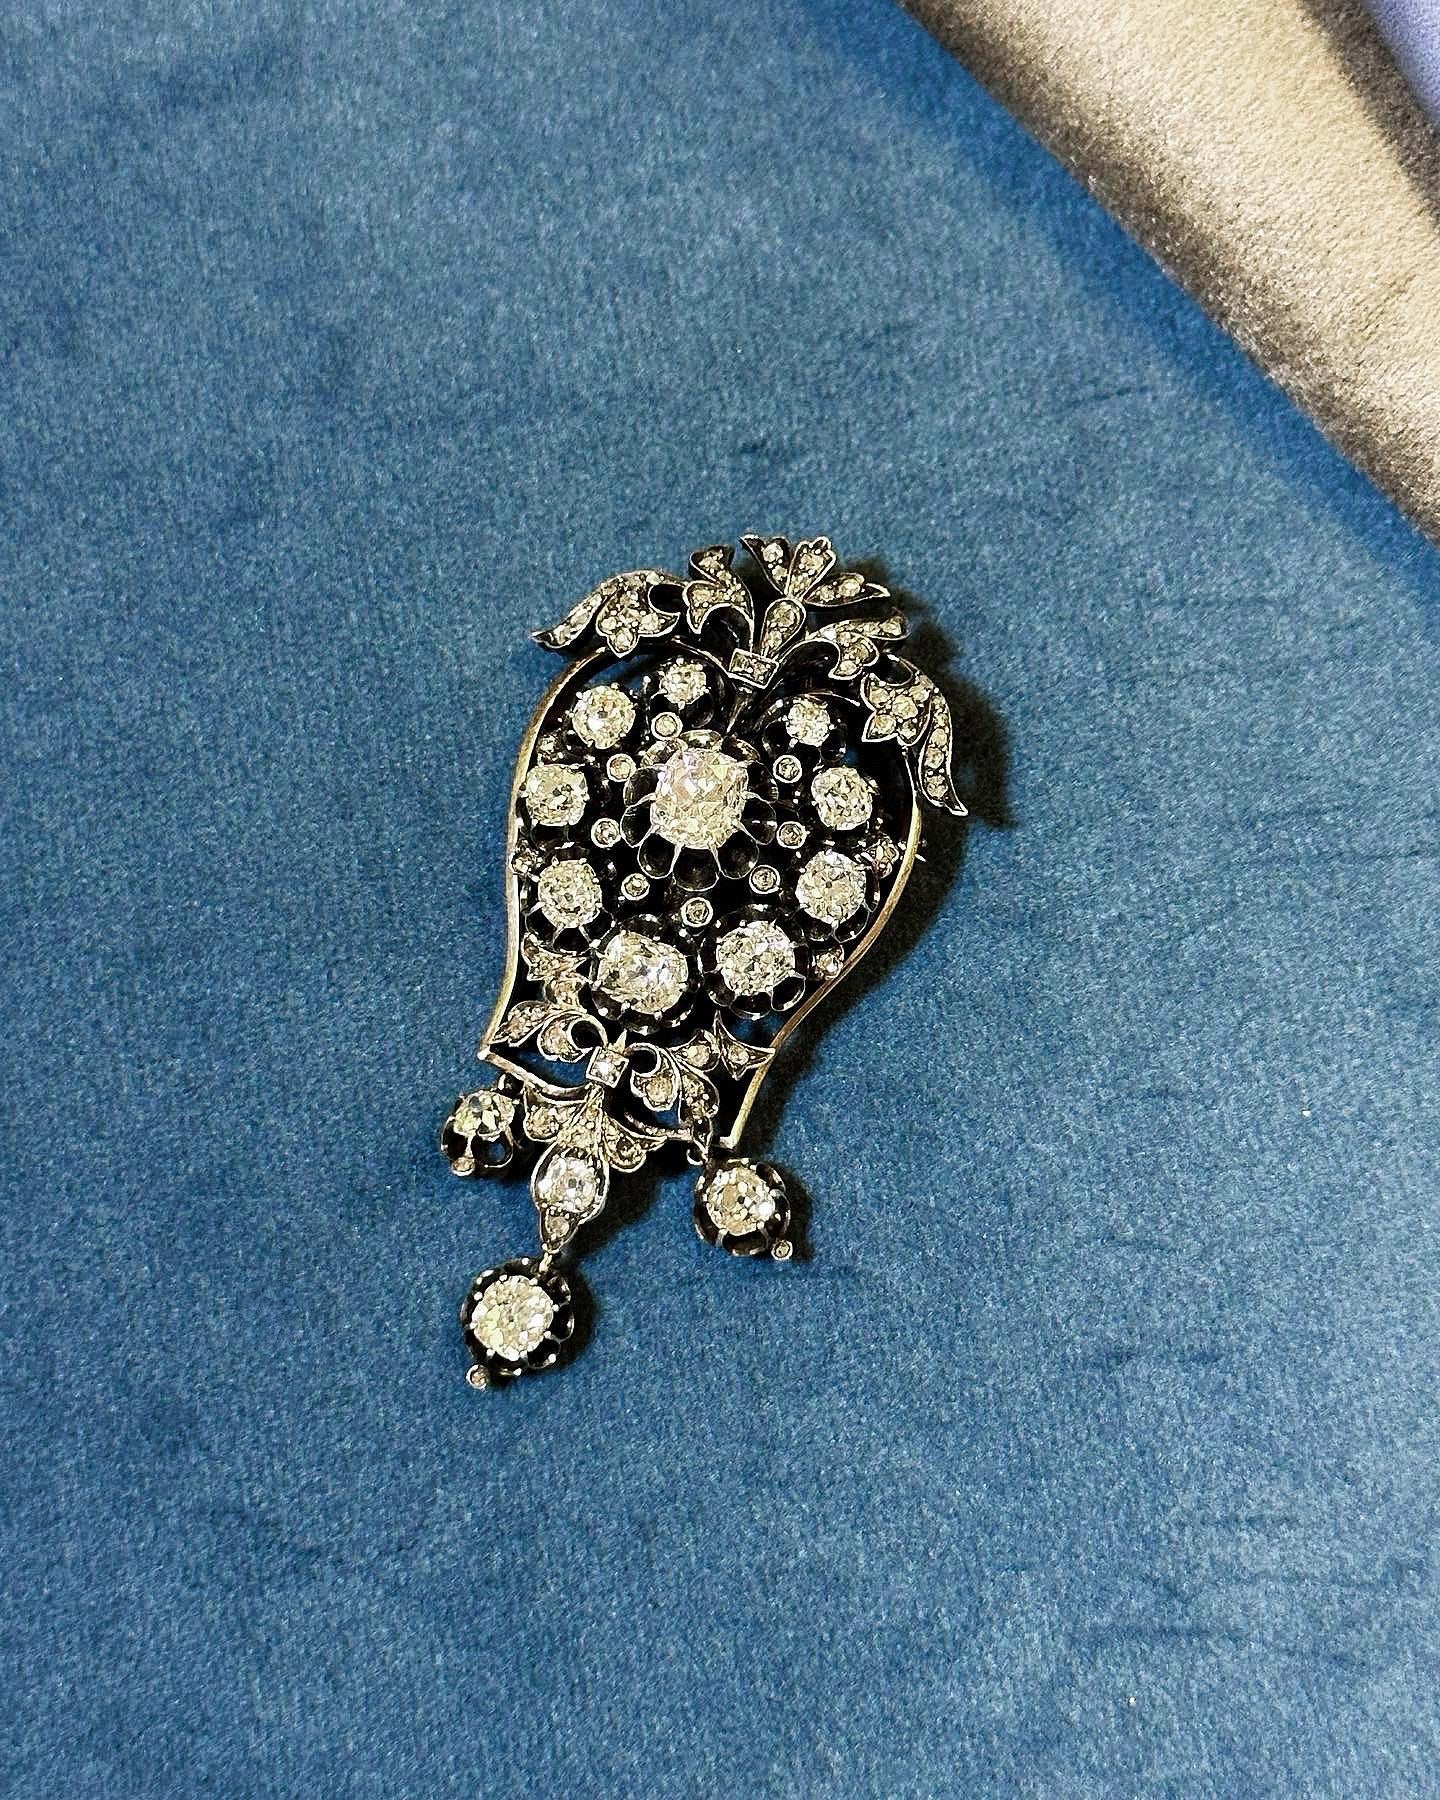 Eine schöne viktorianische antike 7karätige Diamantbrosche aus den 1880er Jahren. 

Der zentrale Diamant im Altminenschliff mit einem Gewicht von 1,56 Karat (D/E, VS/SI) ist von neun Diamanten im Altminenschliff (mit einem Gewicht zwischen 0,2 und